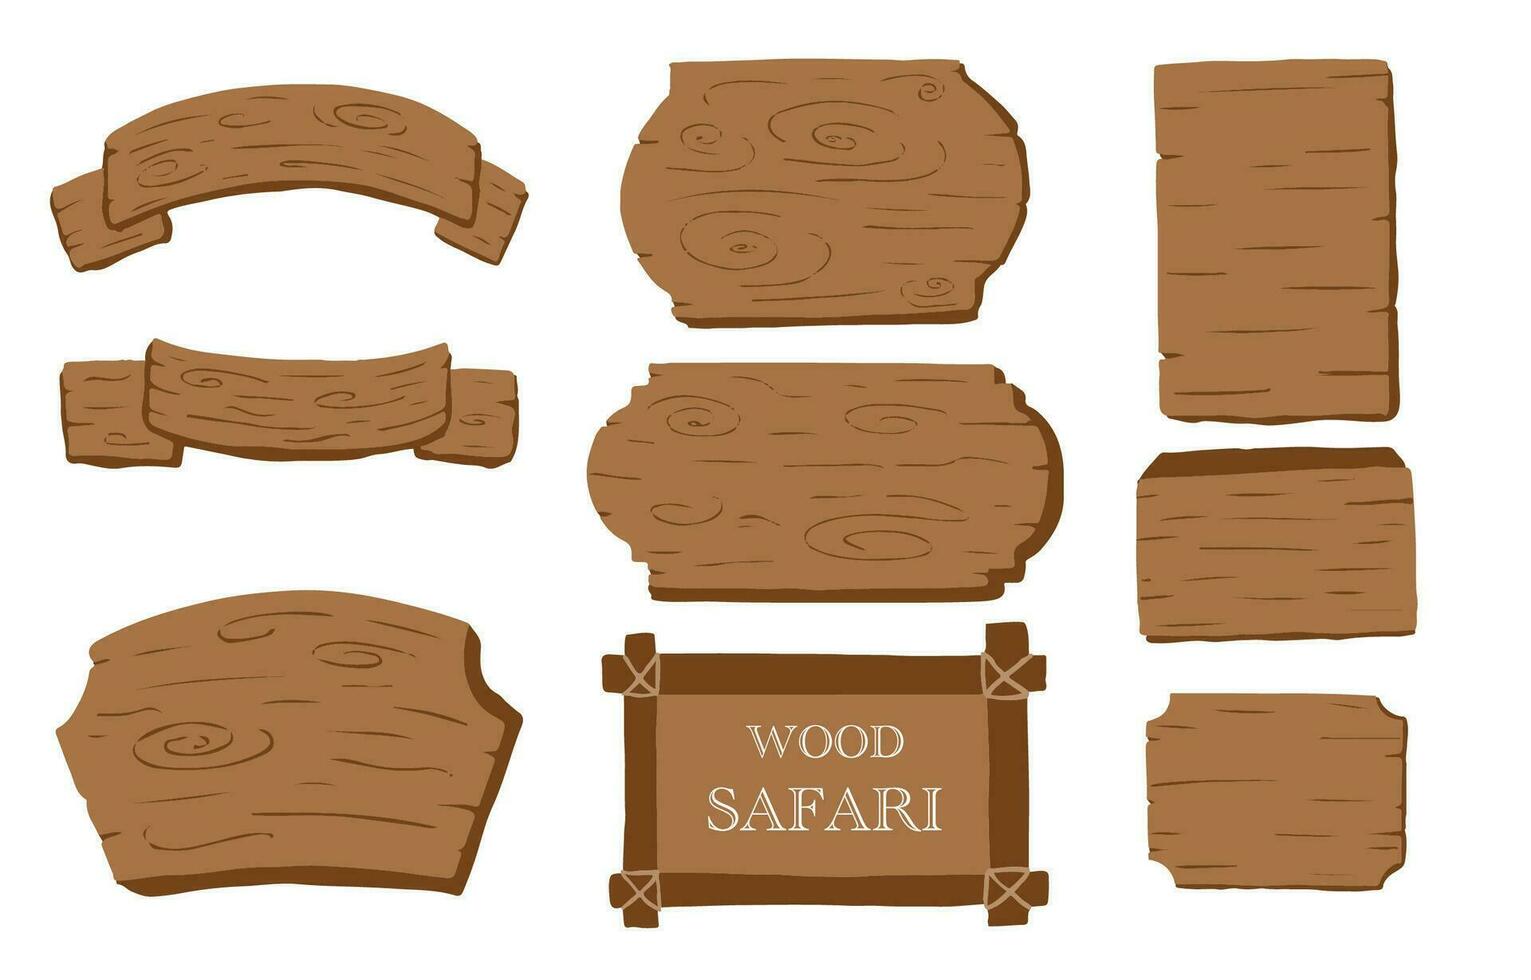 hout banier verzameling van safari achtergrond set.bewerkbaar vector illustratie voor verjaardag uitnodiging, ansichtkaart en sticker